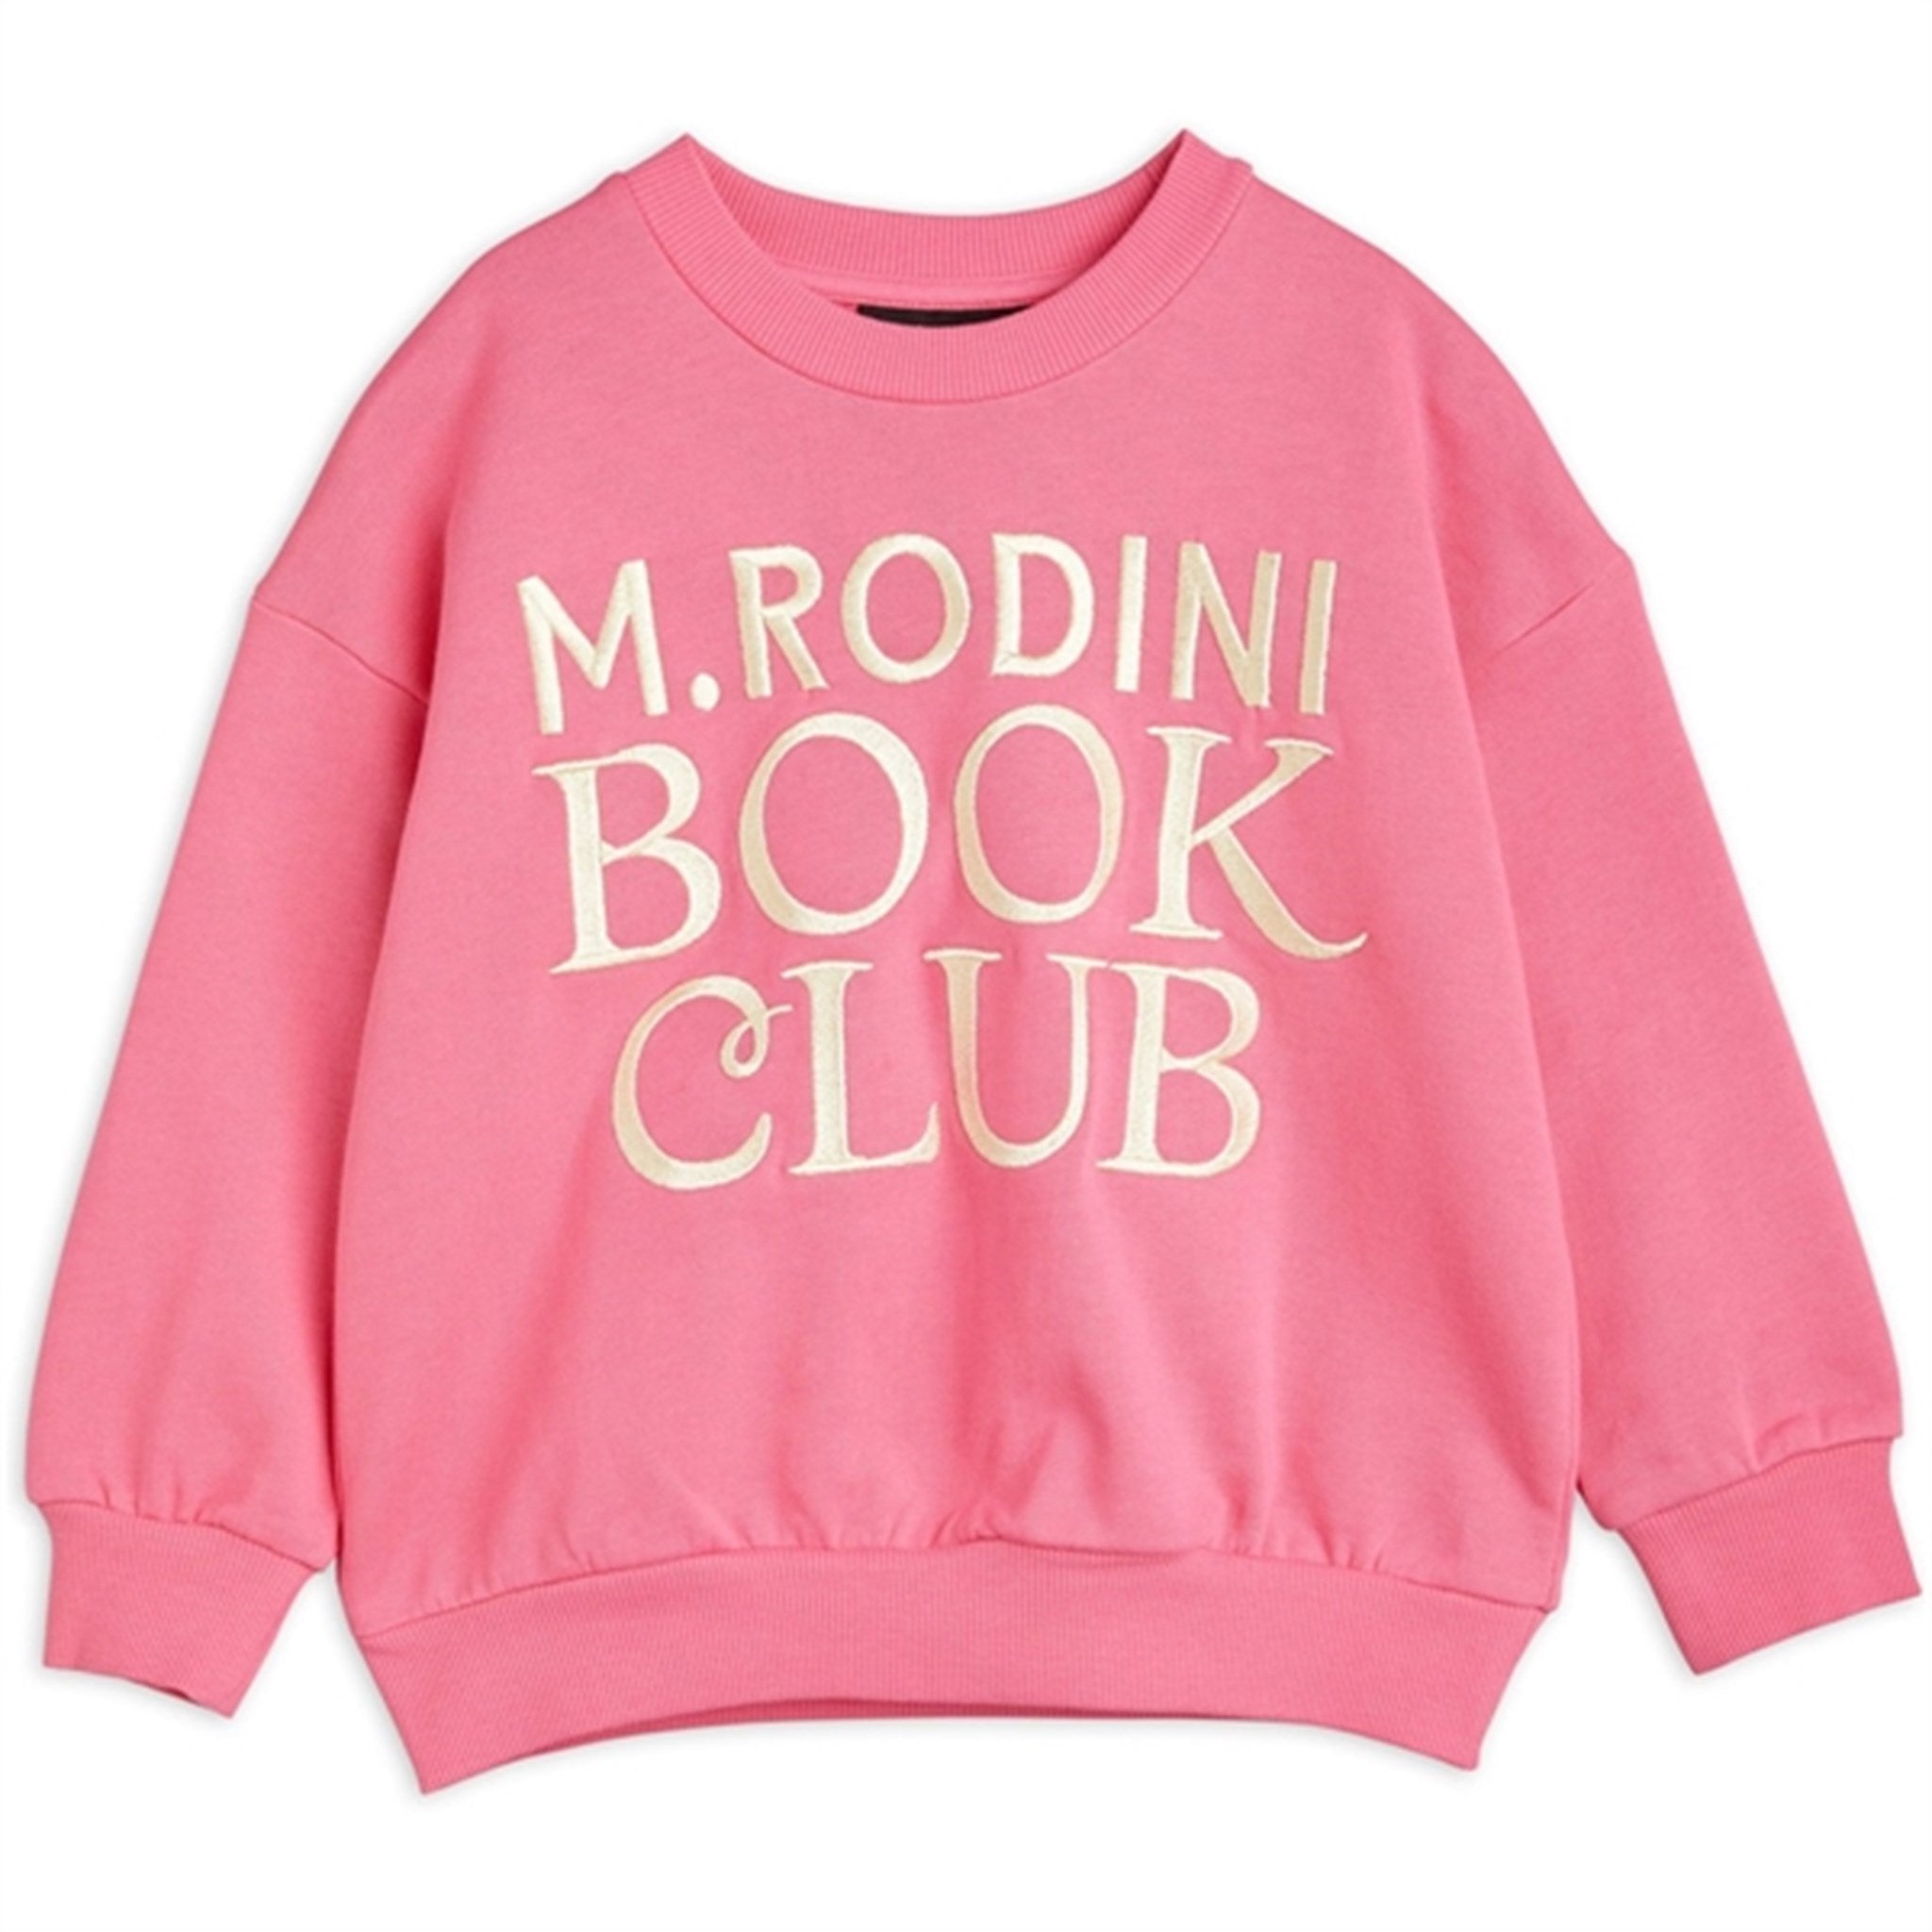 Mini Rodini Book Club Emb Sweatshirt Pink